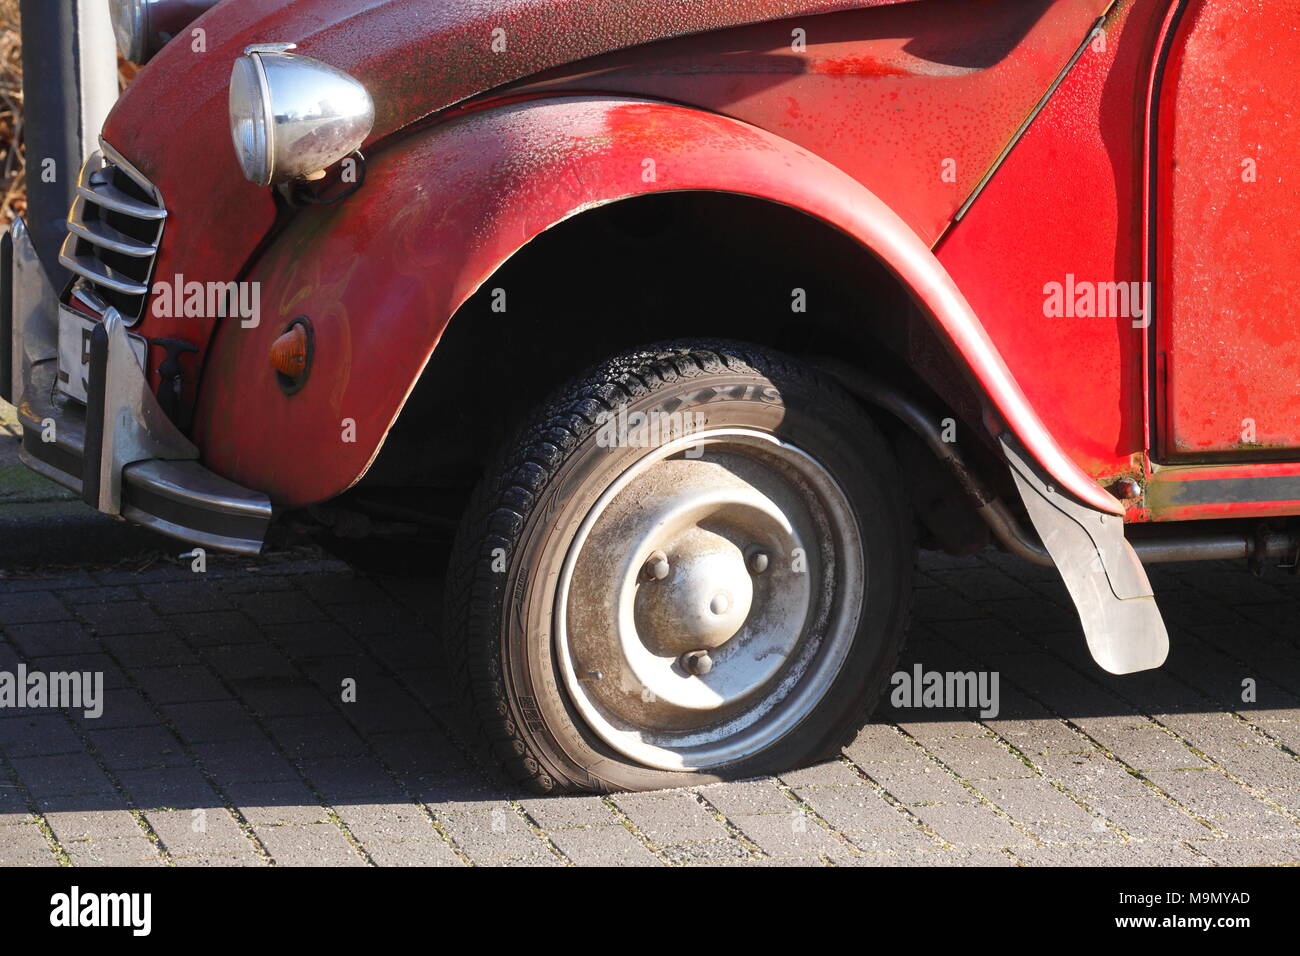 Reifenpanne auf Oldtimer, Citroen 2 CV Ente, Deutschland Stockfotografie -  Alamy